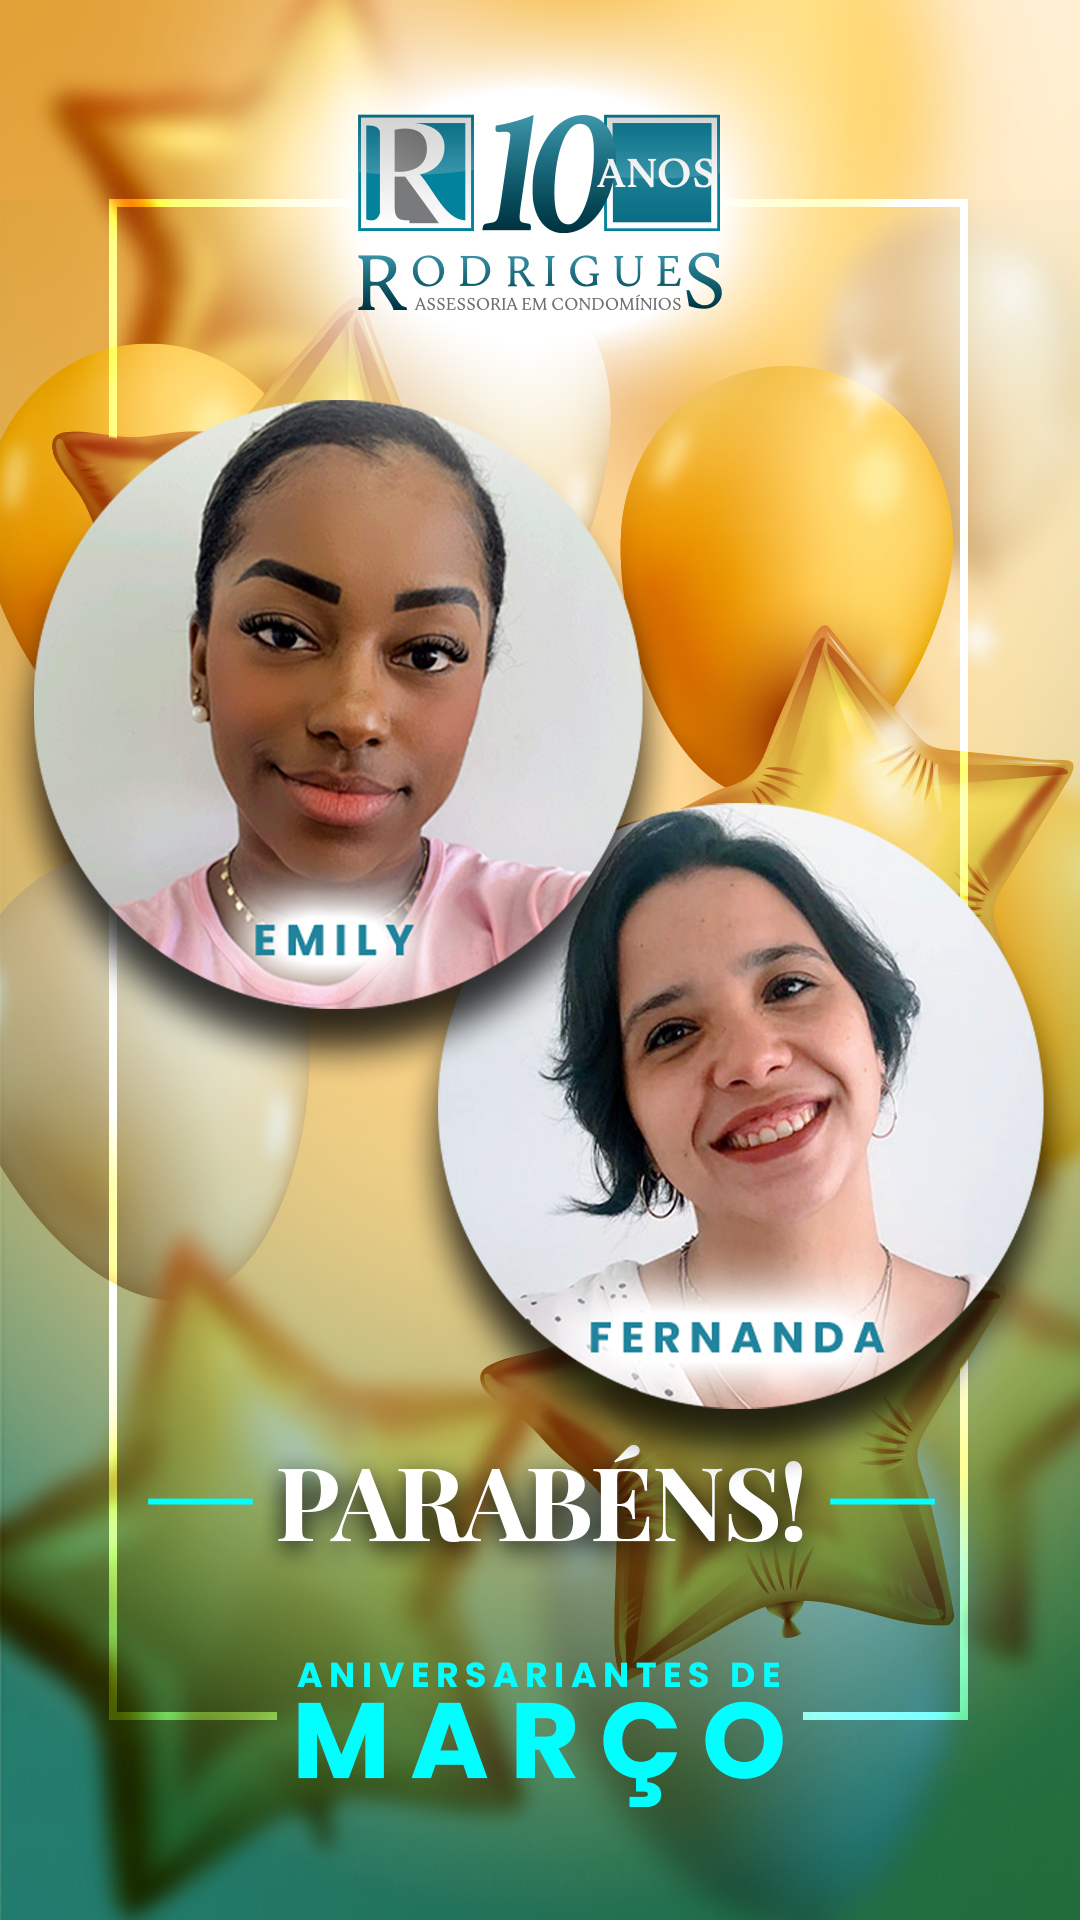 🎂 Aniversariantes de MARÇO 🎉 Parabéns aos nossos colaboradores que fazem aniversário nesse mês! São eles: Emily (12/03) e Fernanda (28/03). Desejamos a vocês muita saúde, sucesso e felicidade. 👏 👏 👏 Parabéns!